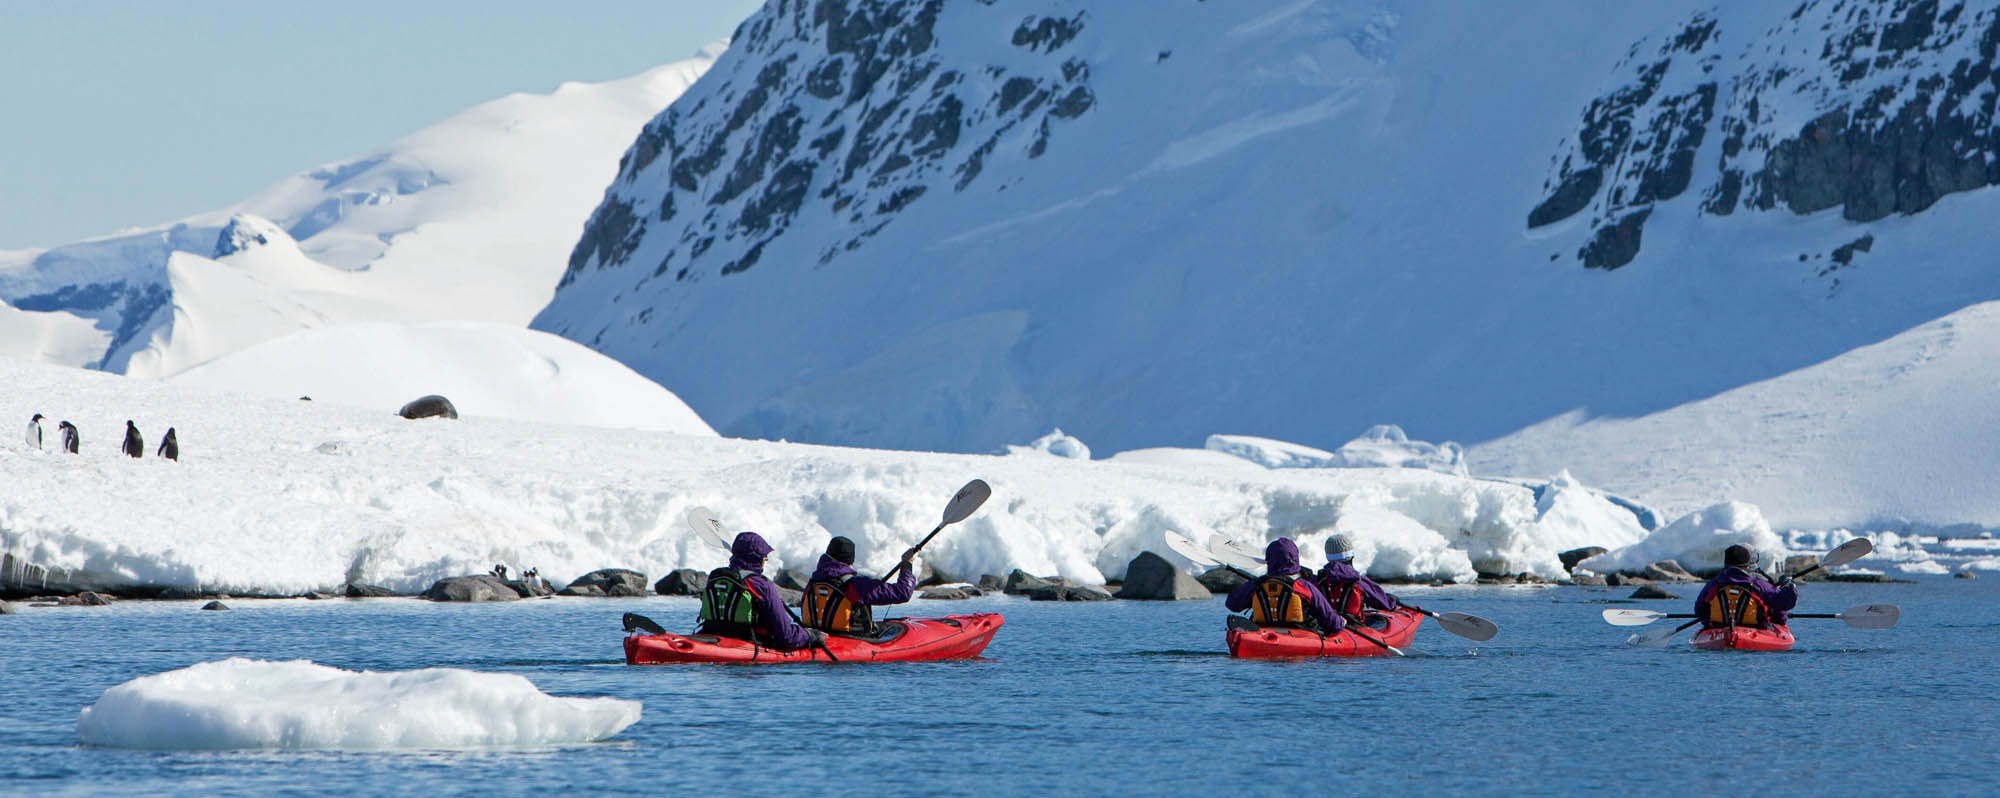 Kayaking in Antarctica - Troels Jacobsen